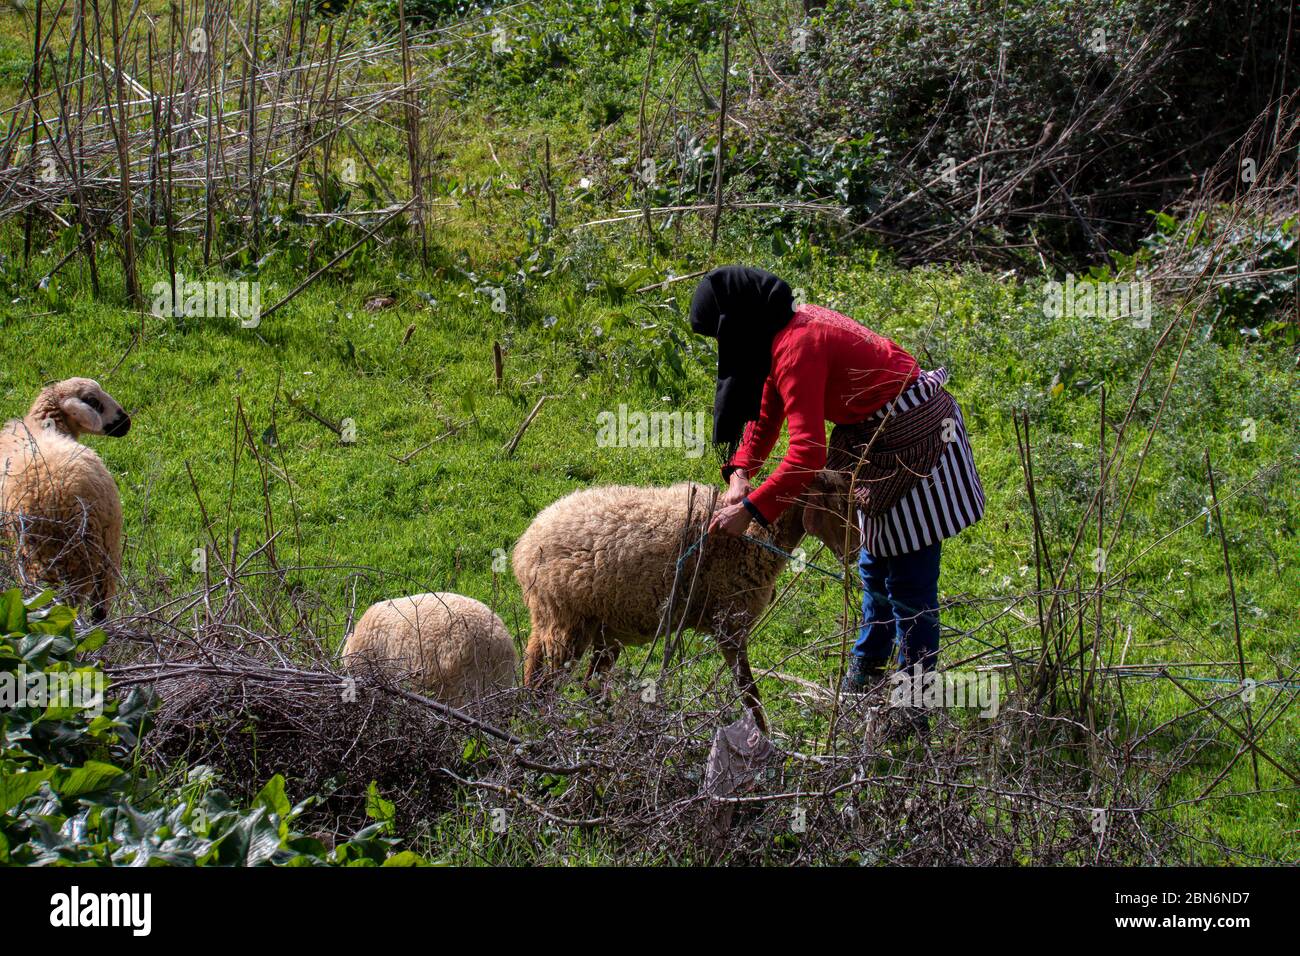 Khizana rural area, Chefchaouen, Morocco - February 26, 2017: Moroccan shepherd woman tending her sheep Stock Photo